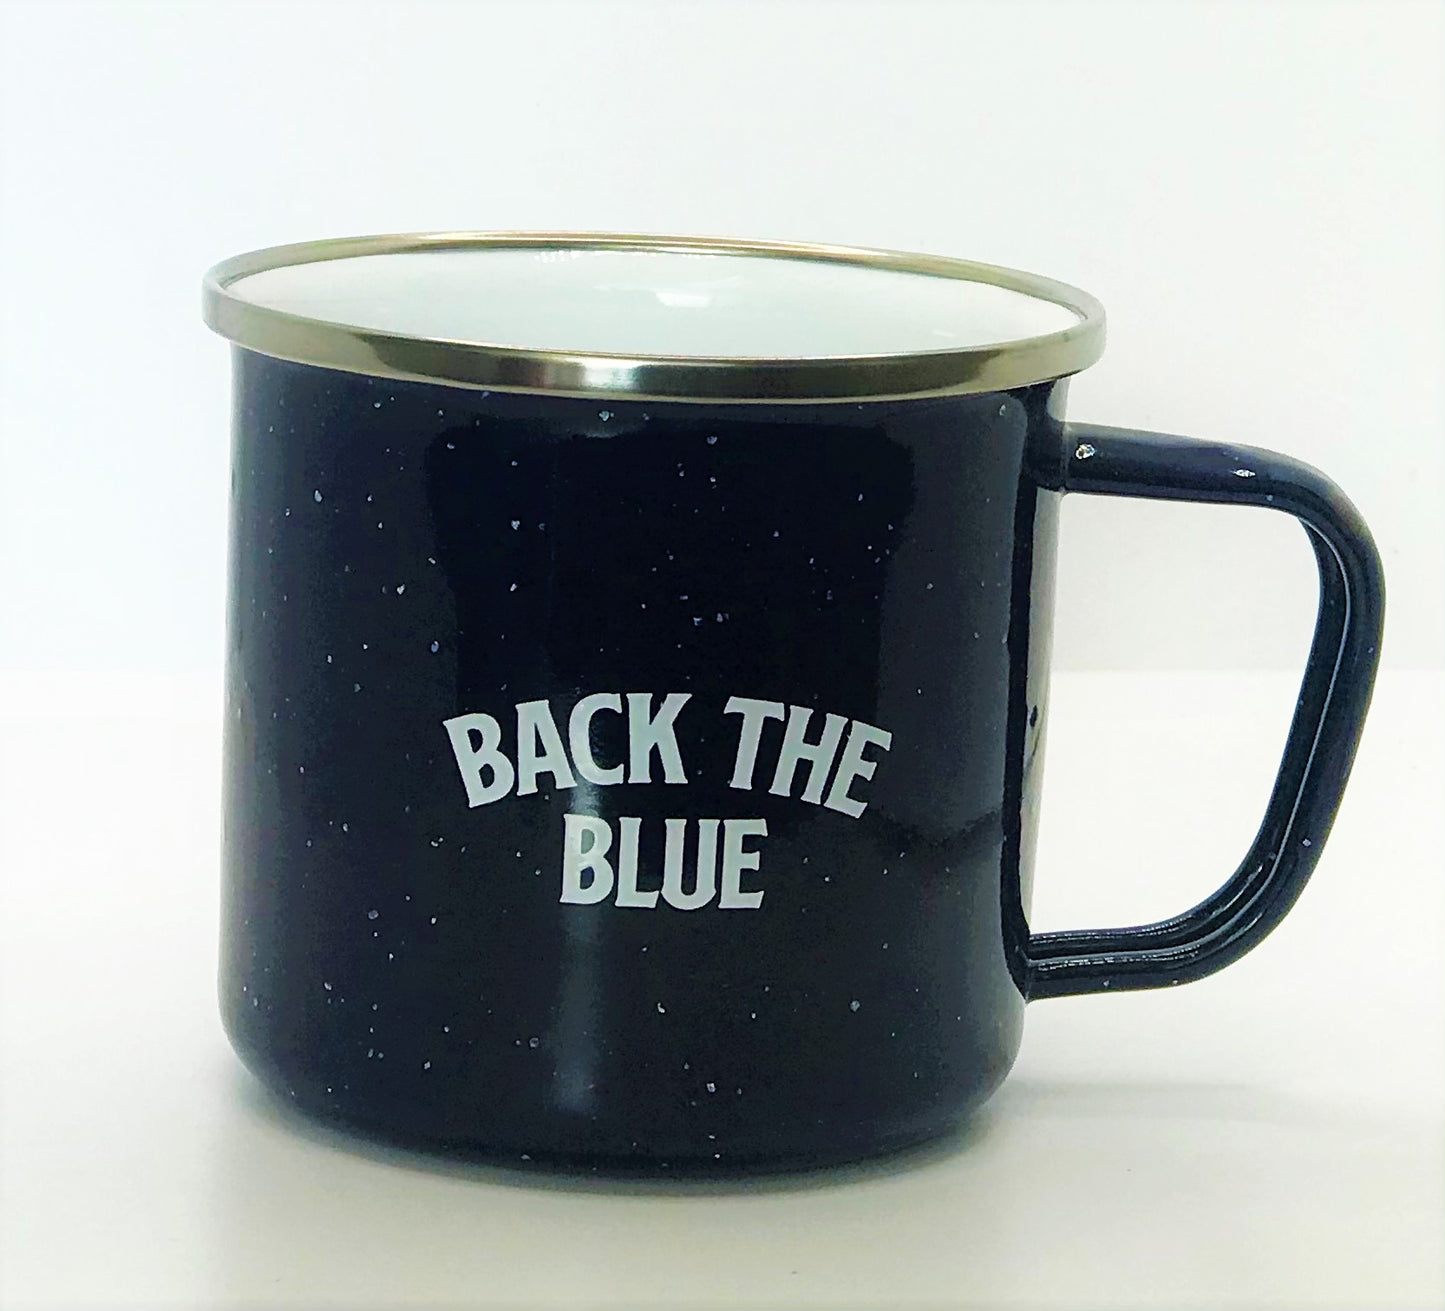 13oz Tin Police Coffee Mug